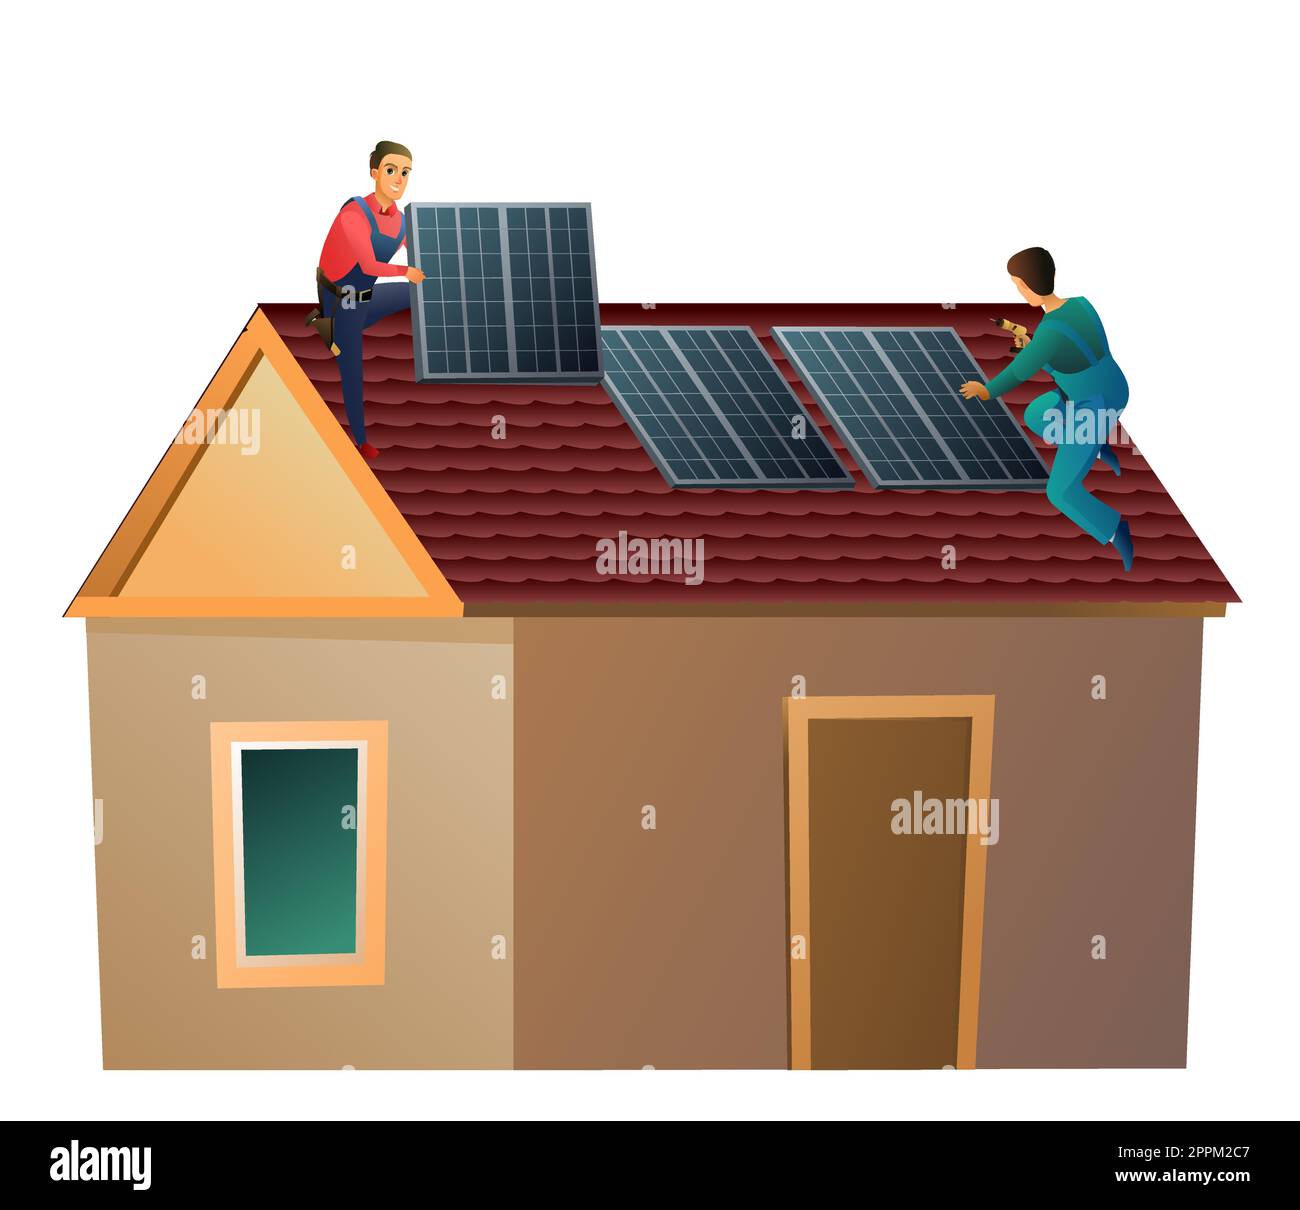 Deux travailleurs installent des panneaux solaires sur le toit. Énergies alternatives. Sources renouvelables d'énergie électrique. Les travailleurs travaillent sur le toit. Petite maison et deux Illustration de Vecteur